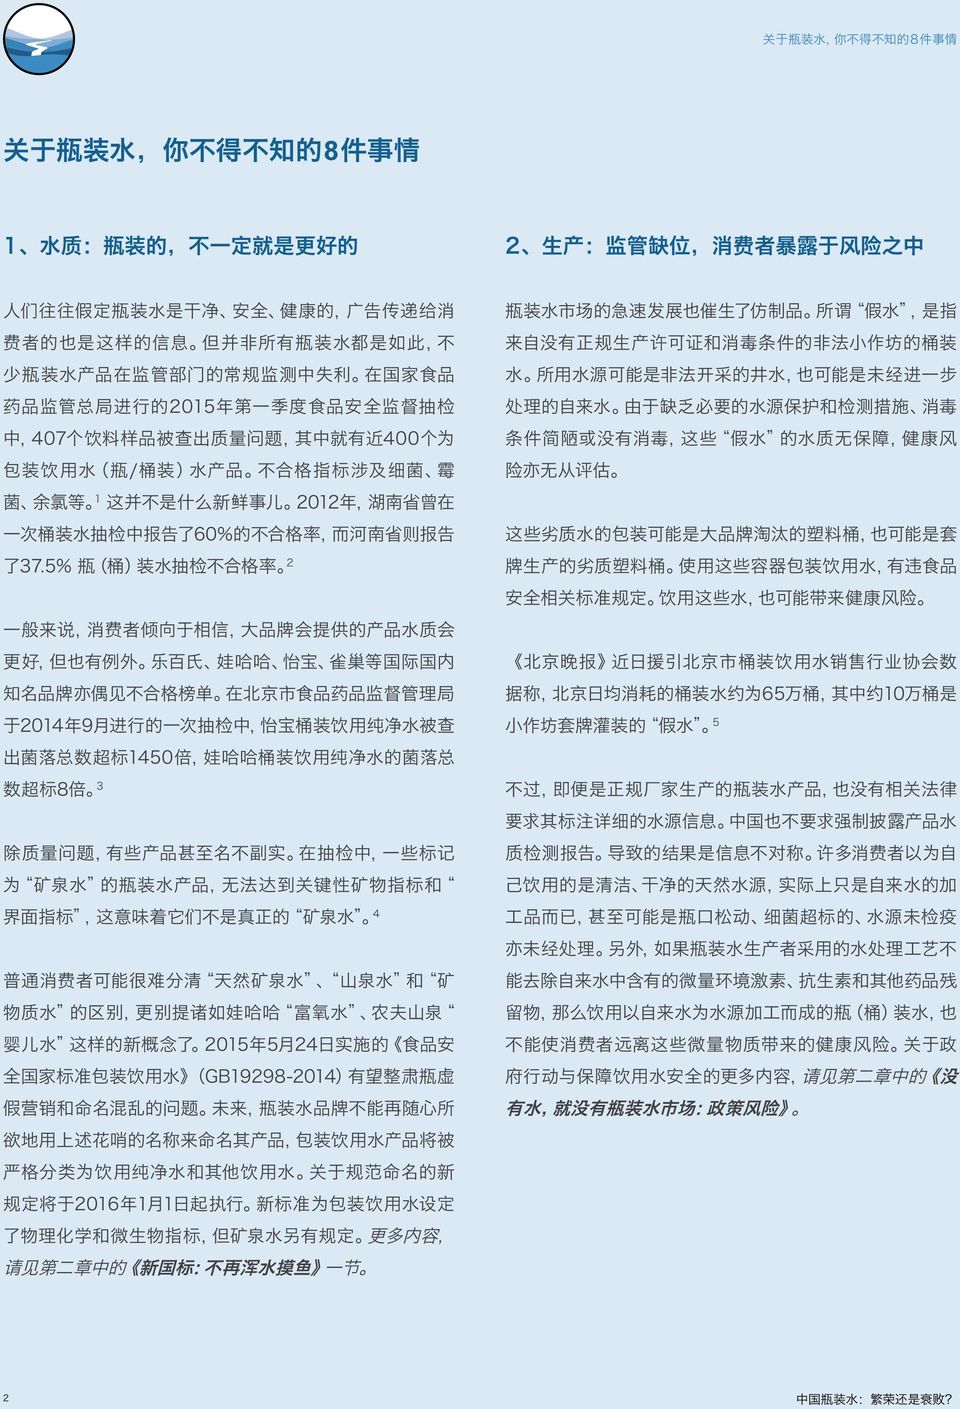 不 合 格 指 标 涉 及 细 菌 霉 菌 余 氯 等 1 这 并 不 是 什 么 新 鲜 事 儿 2 012 年, 湖 南 省 曾 在 一 次 桶 装 水 抽 检 中 报 告 了 60% 的 不 合 格 率, 而 河 南 省 则 报 告 了 37.